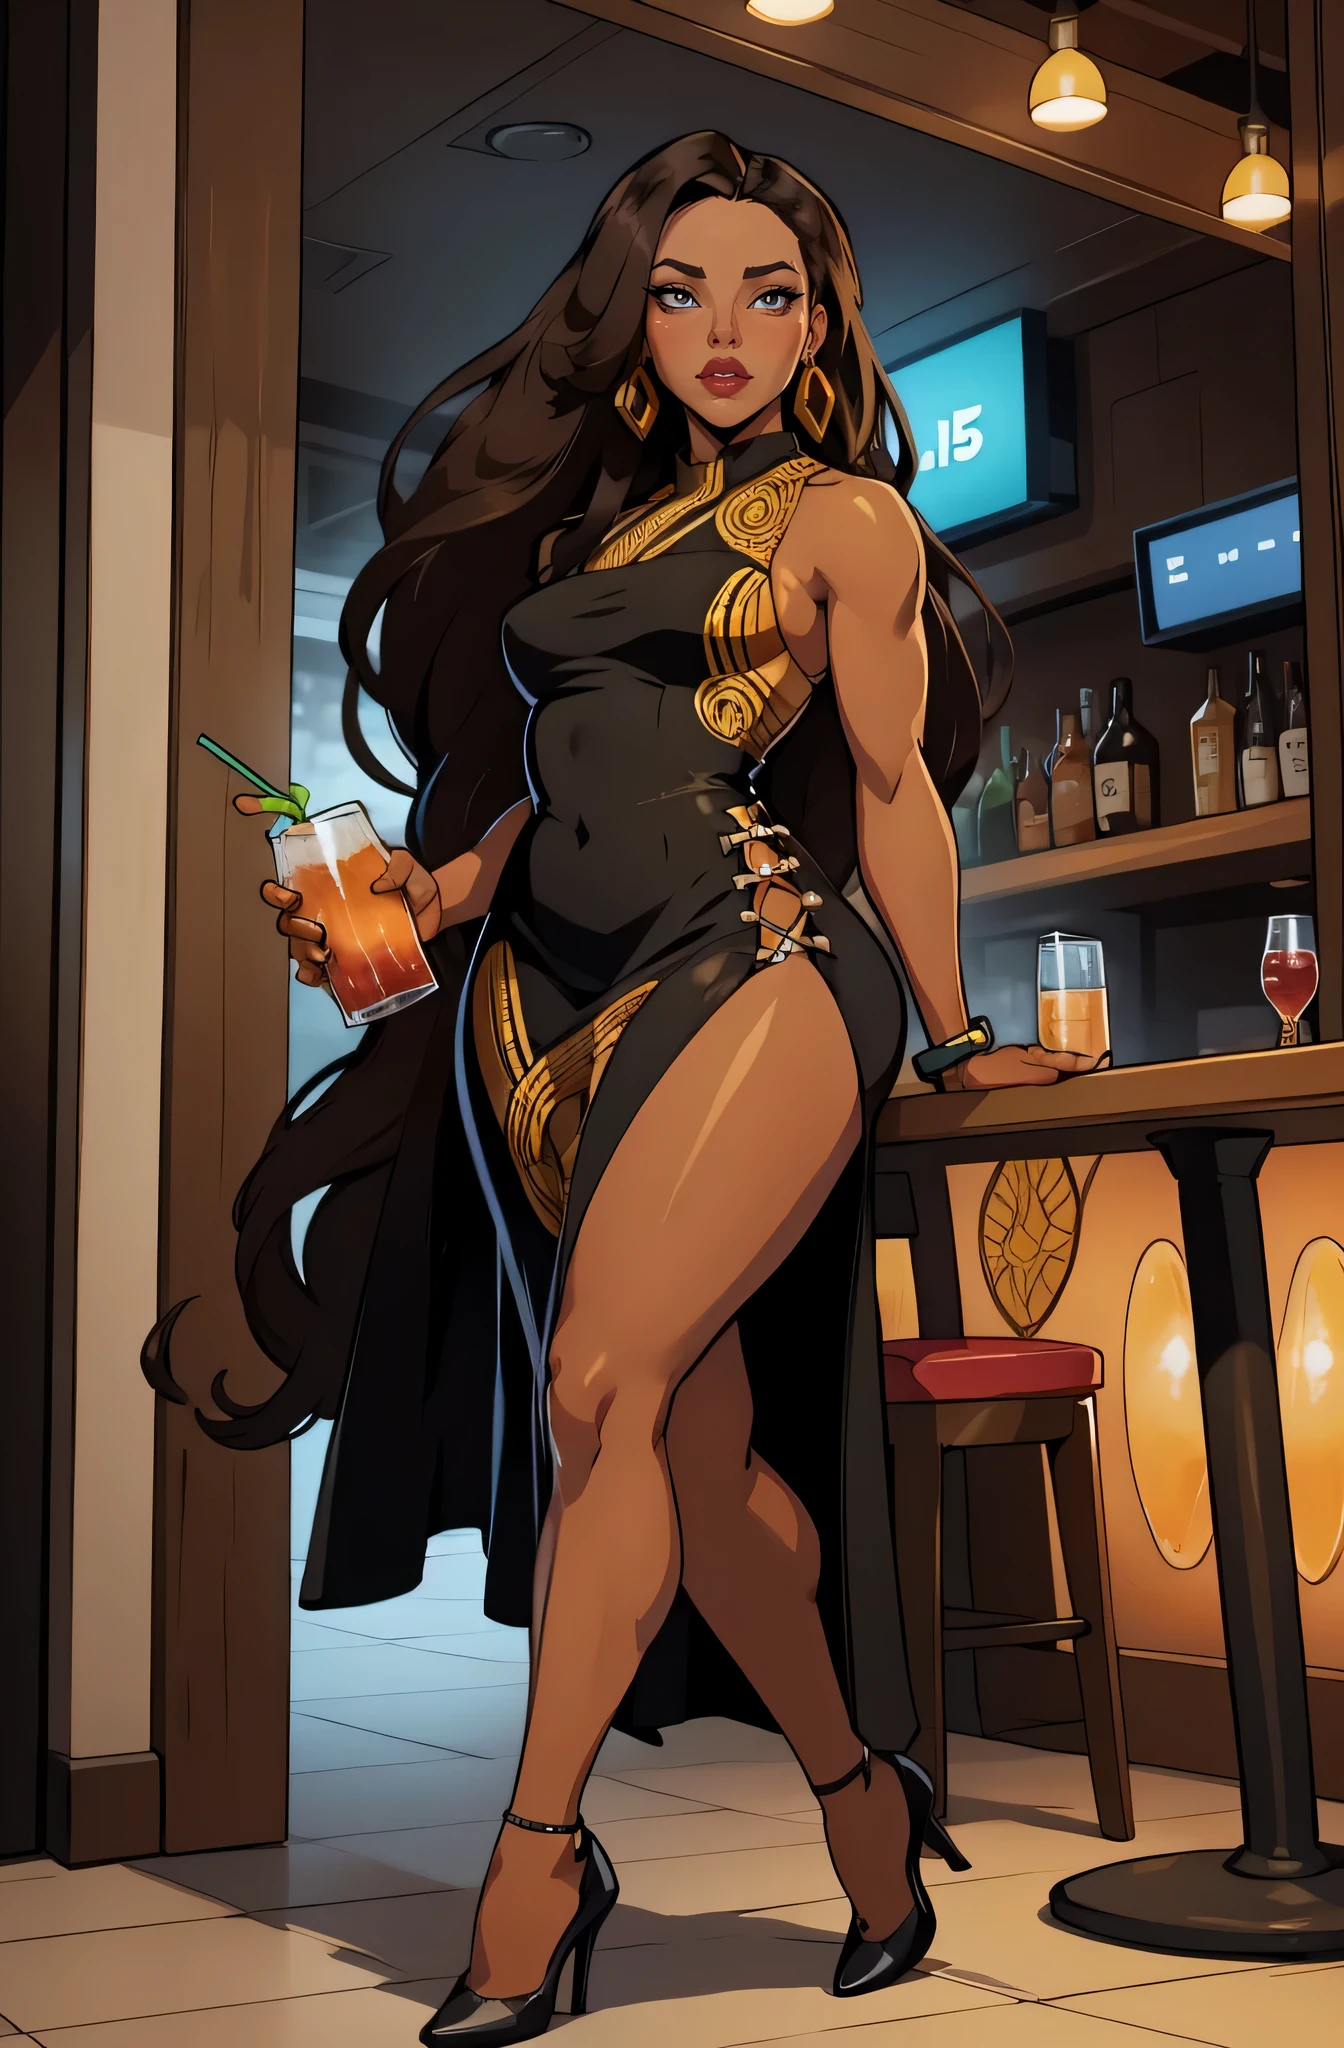 在酒吧背景喝雞尾酒 (一名 35 歲女性) 古銅色的肌膚, 獨自的, 1 名女孩, 肖像, 非洲長髮, 超詳細, 現代風格, 直視, 全身穿著黑色連身裙